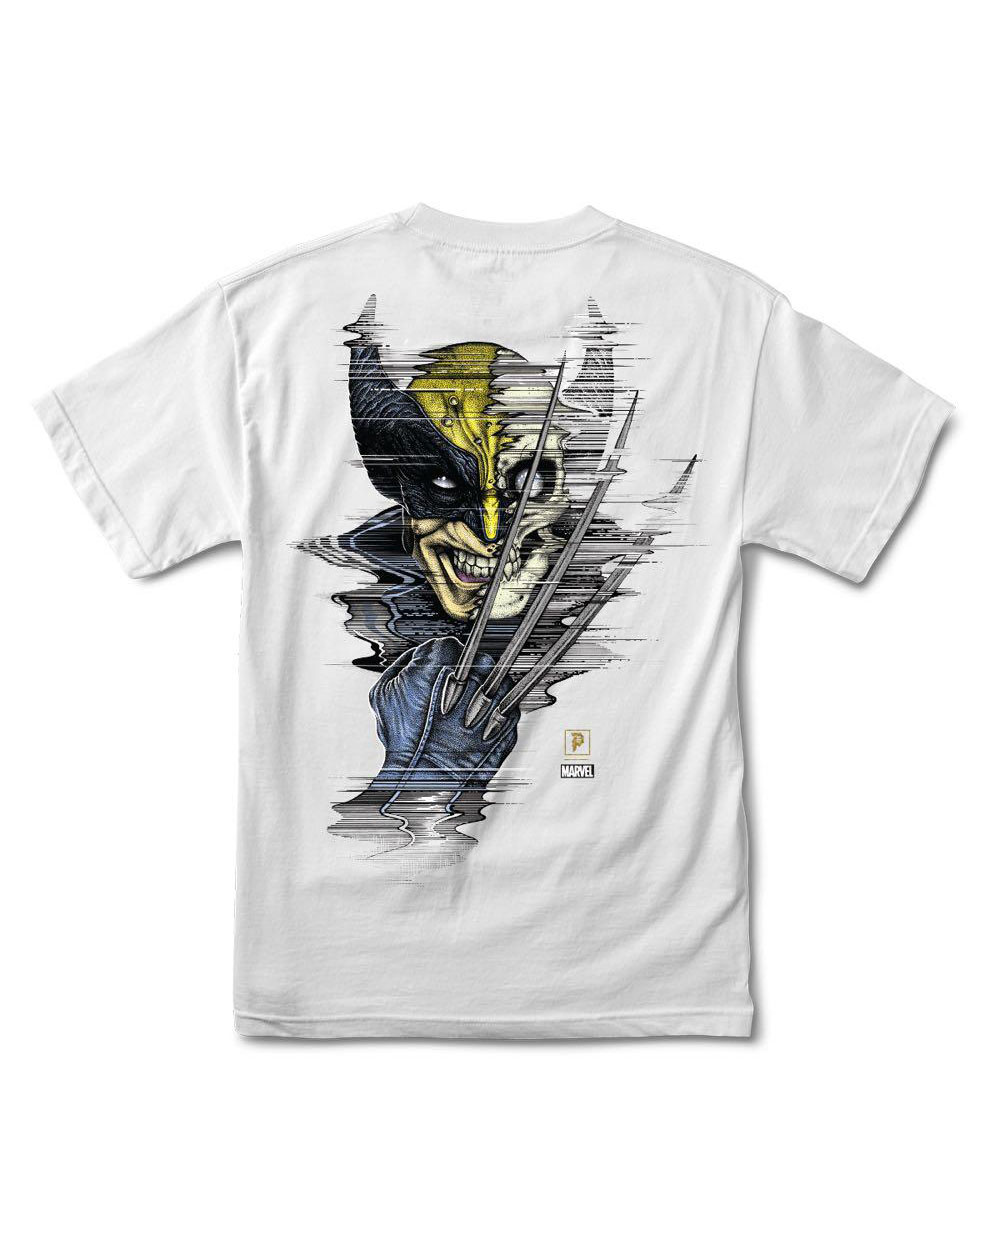 Primitive Herren T-Shirt Paul Jackson x Marvel - Wolverine White